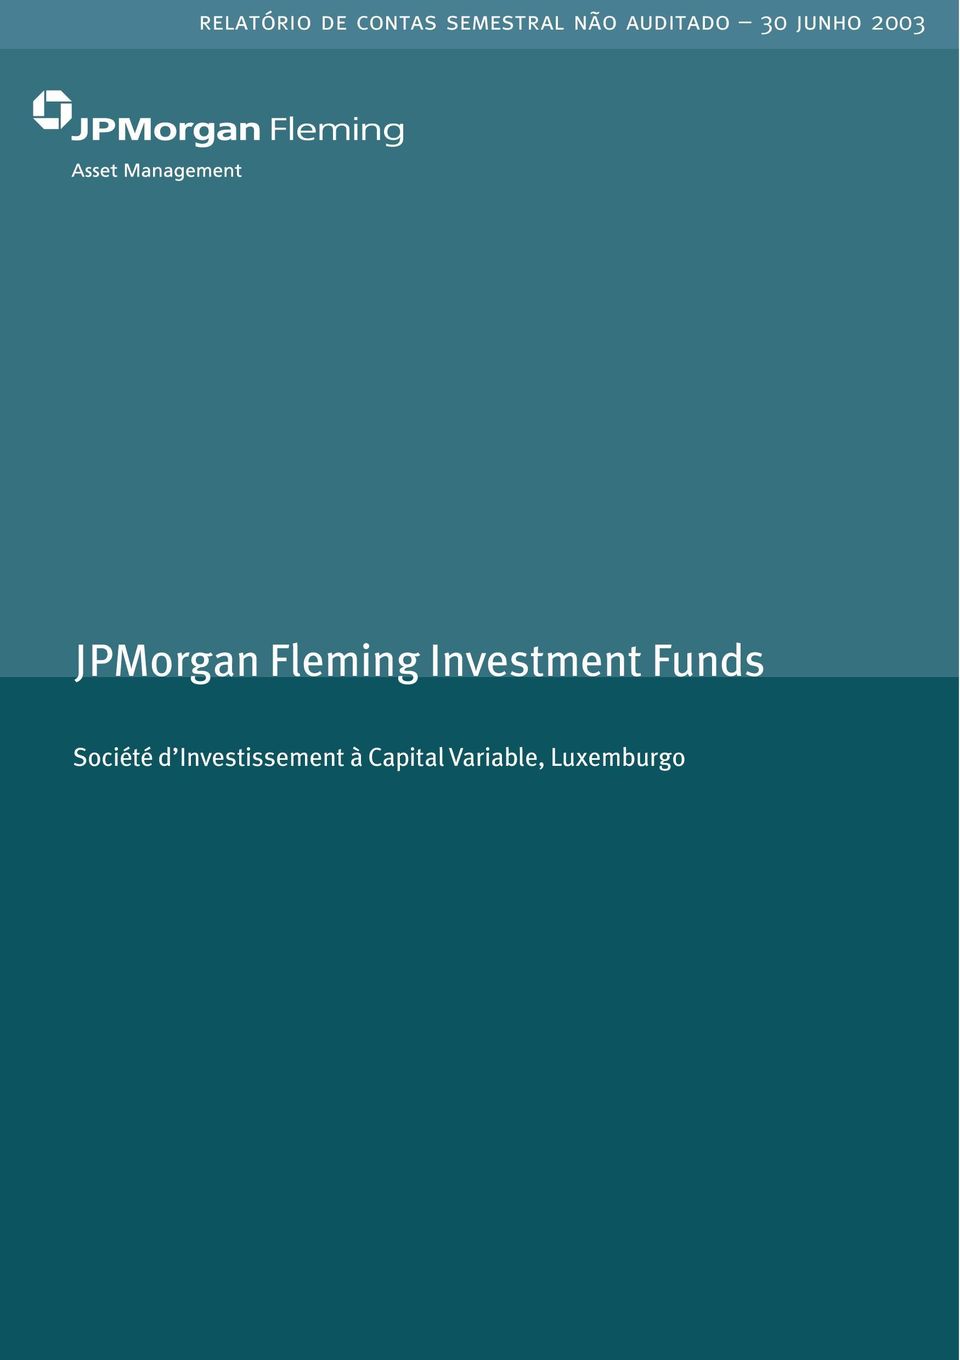 Fleming Investment s Société d